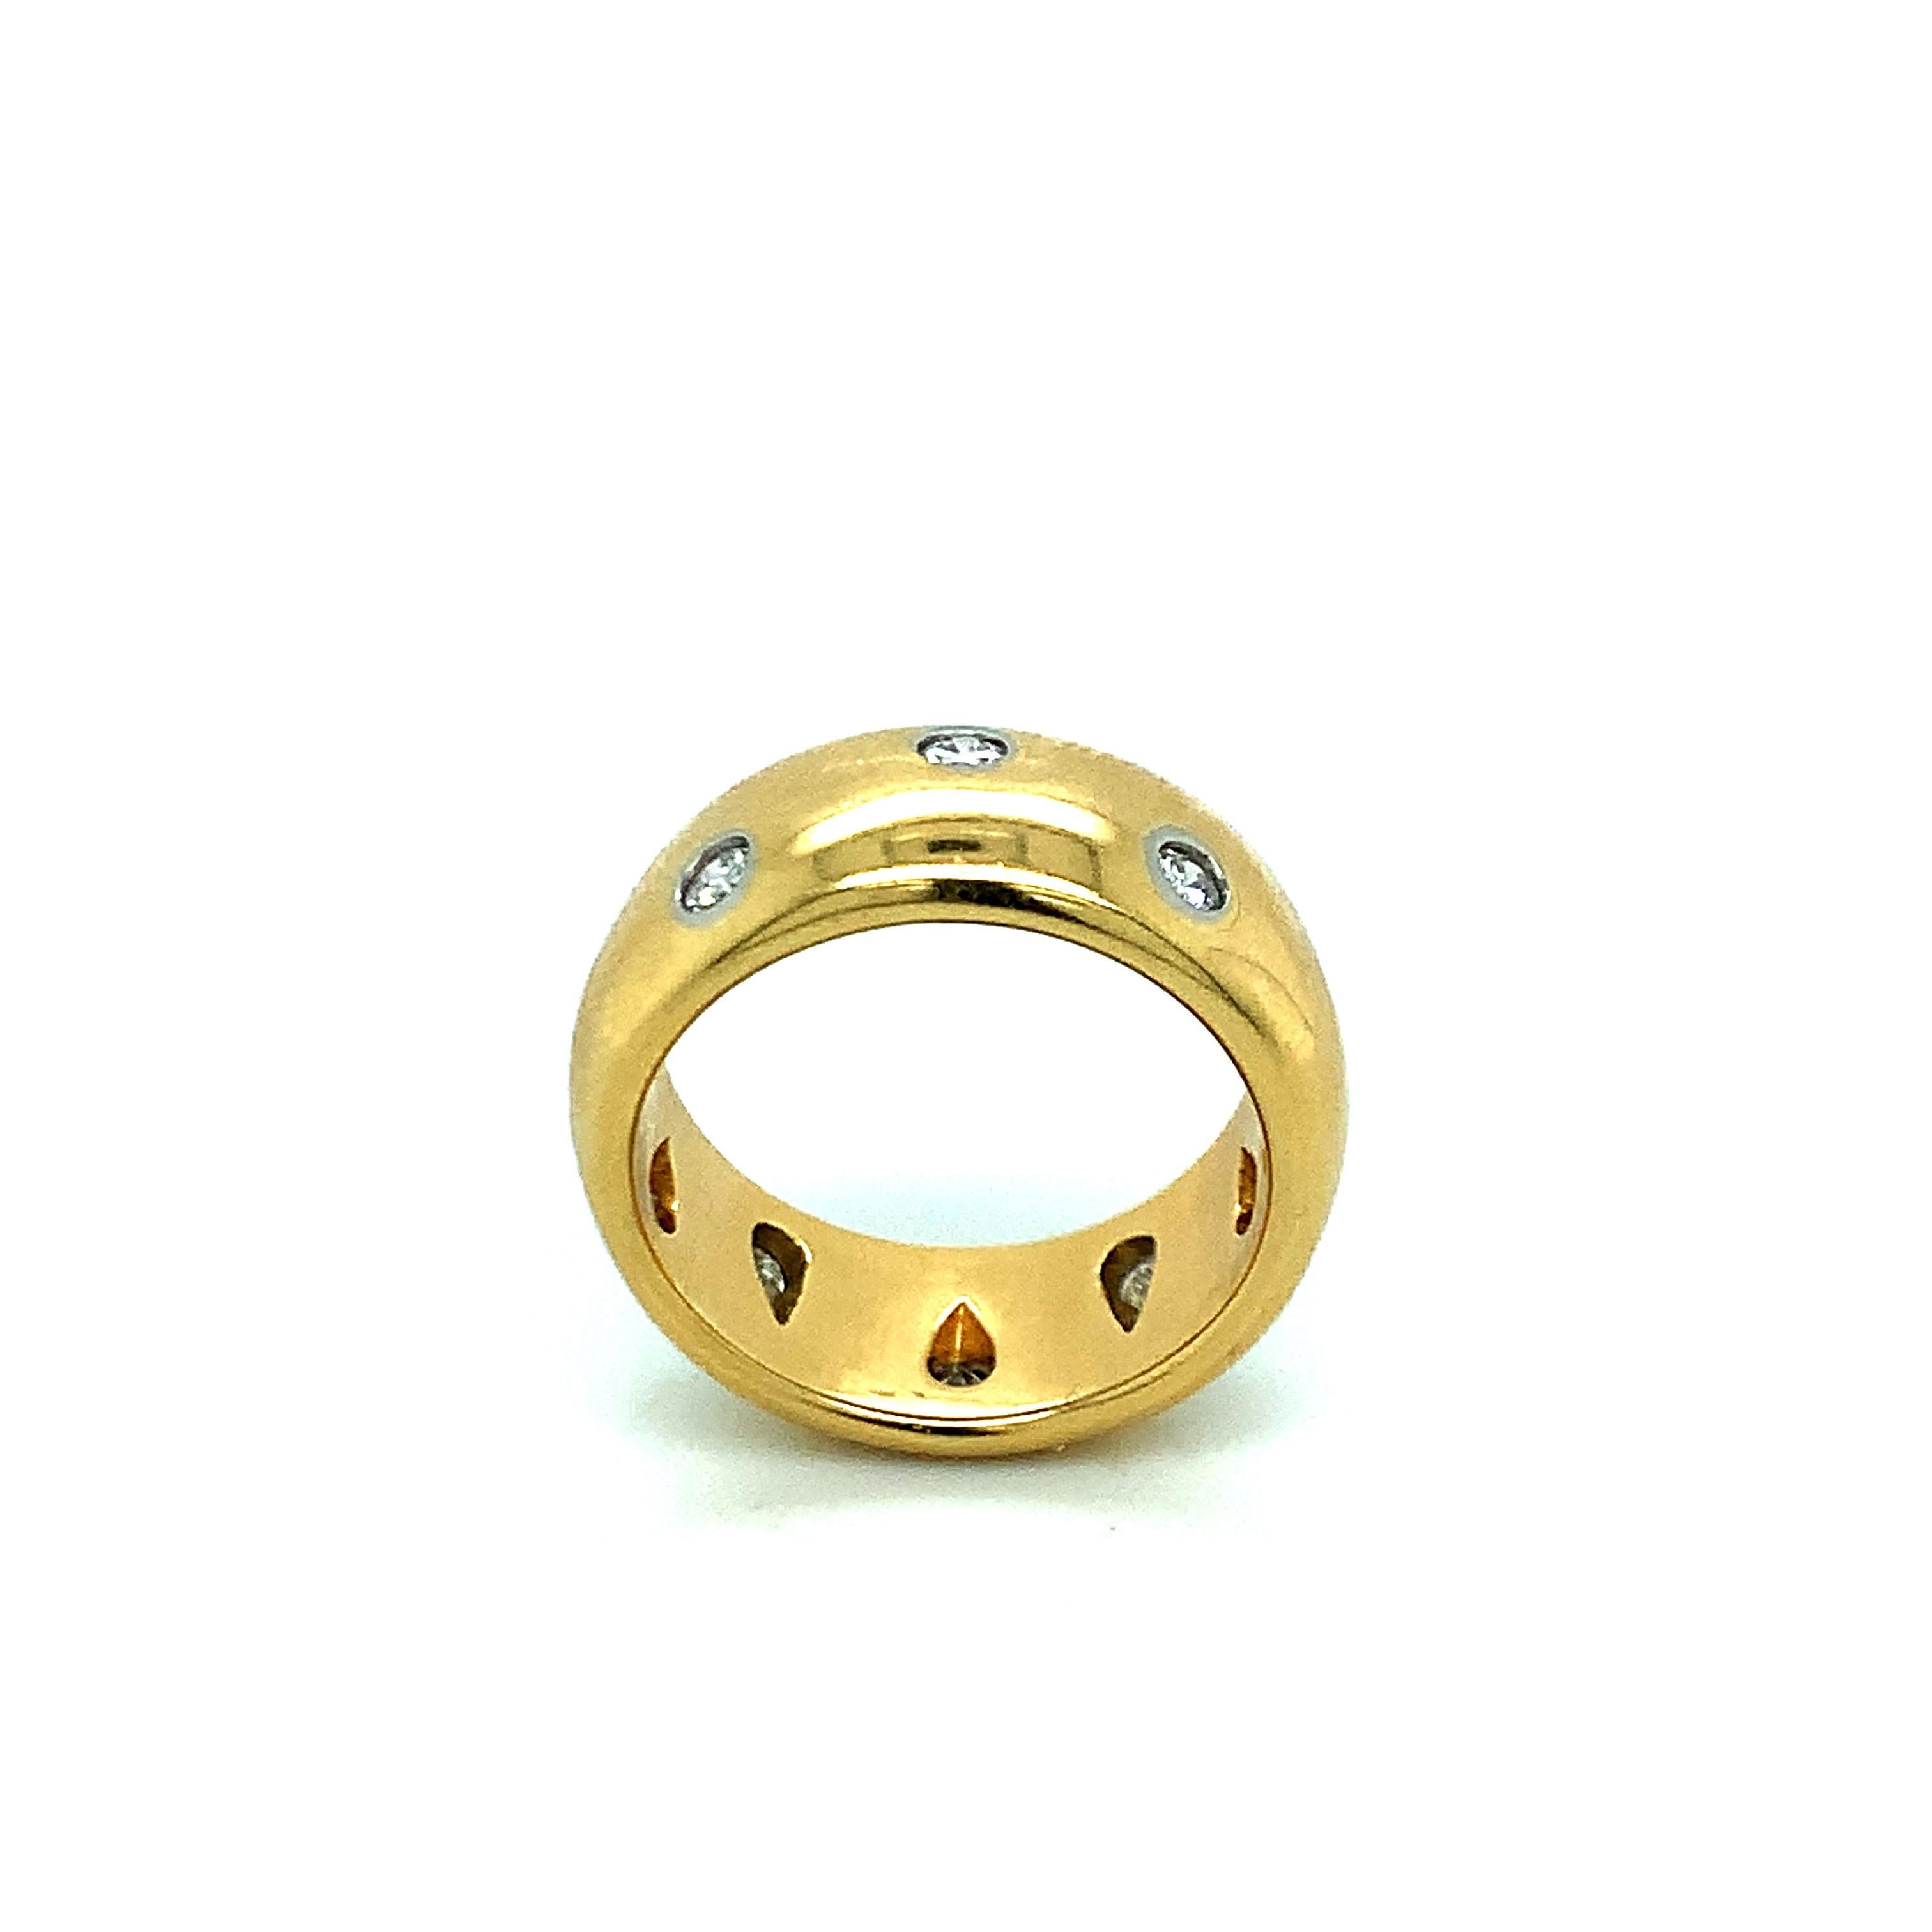 Dieser Ring aus 18 Karat und Platin wurde von Tiffany & Co. entworfen und zeichnet sich durch Diamanten aus, die im Zickzackmuster angeordnet sind. Gekennzeichnet mit Tiffany & Co. 750 und PT850. Gesamtgewicht: 11,6 Gramm. Größe 5. 
